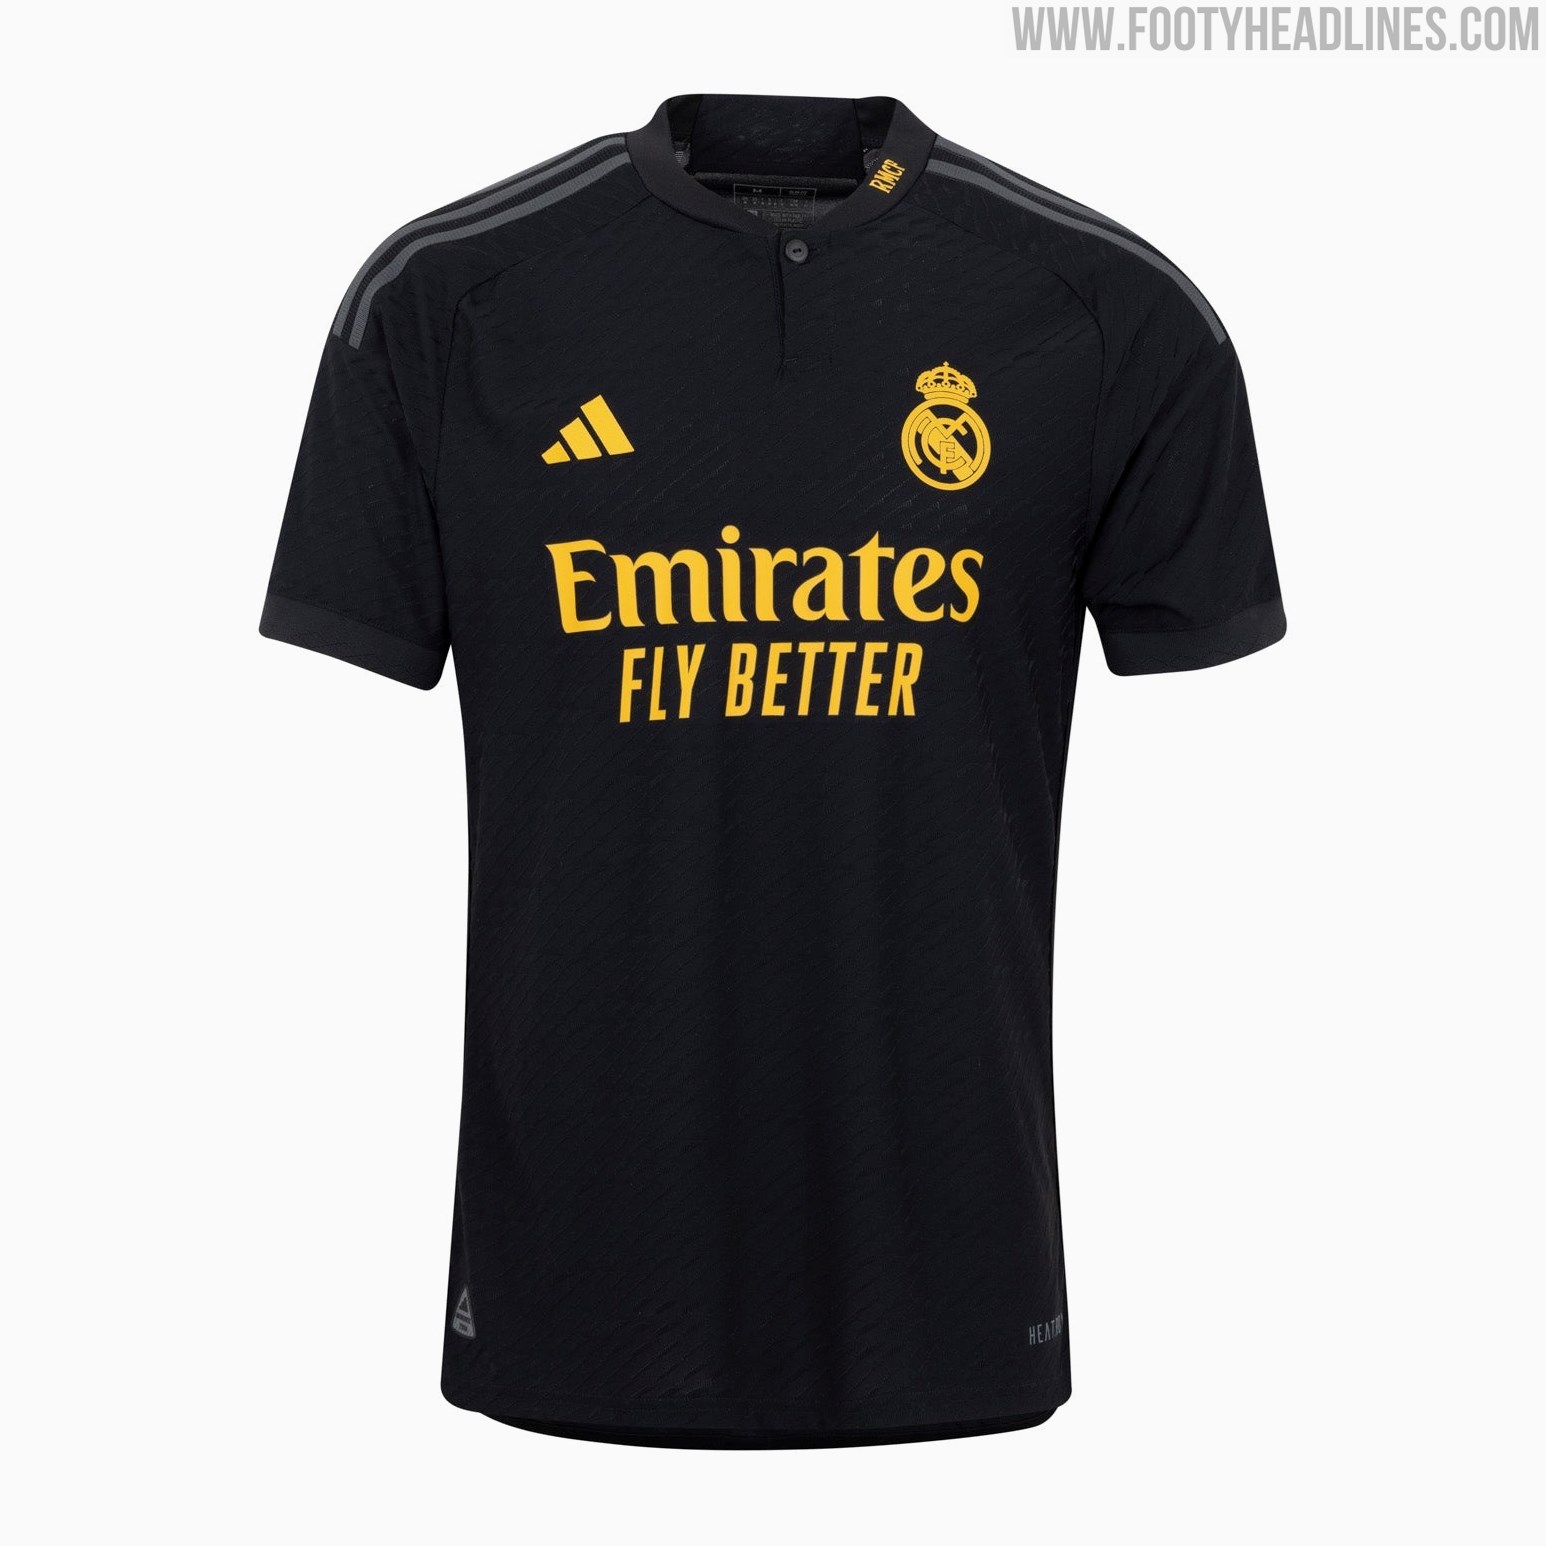 Real Madrid 23-24 Third Kit Released - Footy Headlines